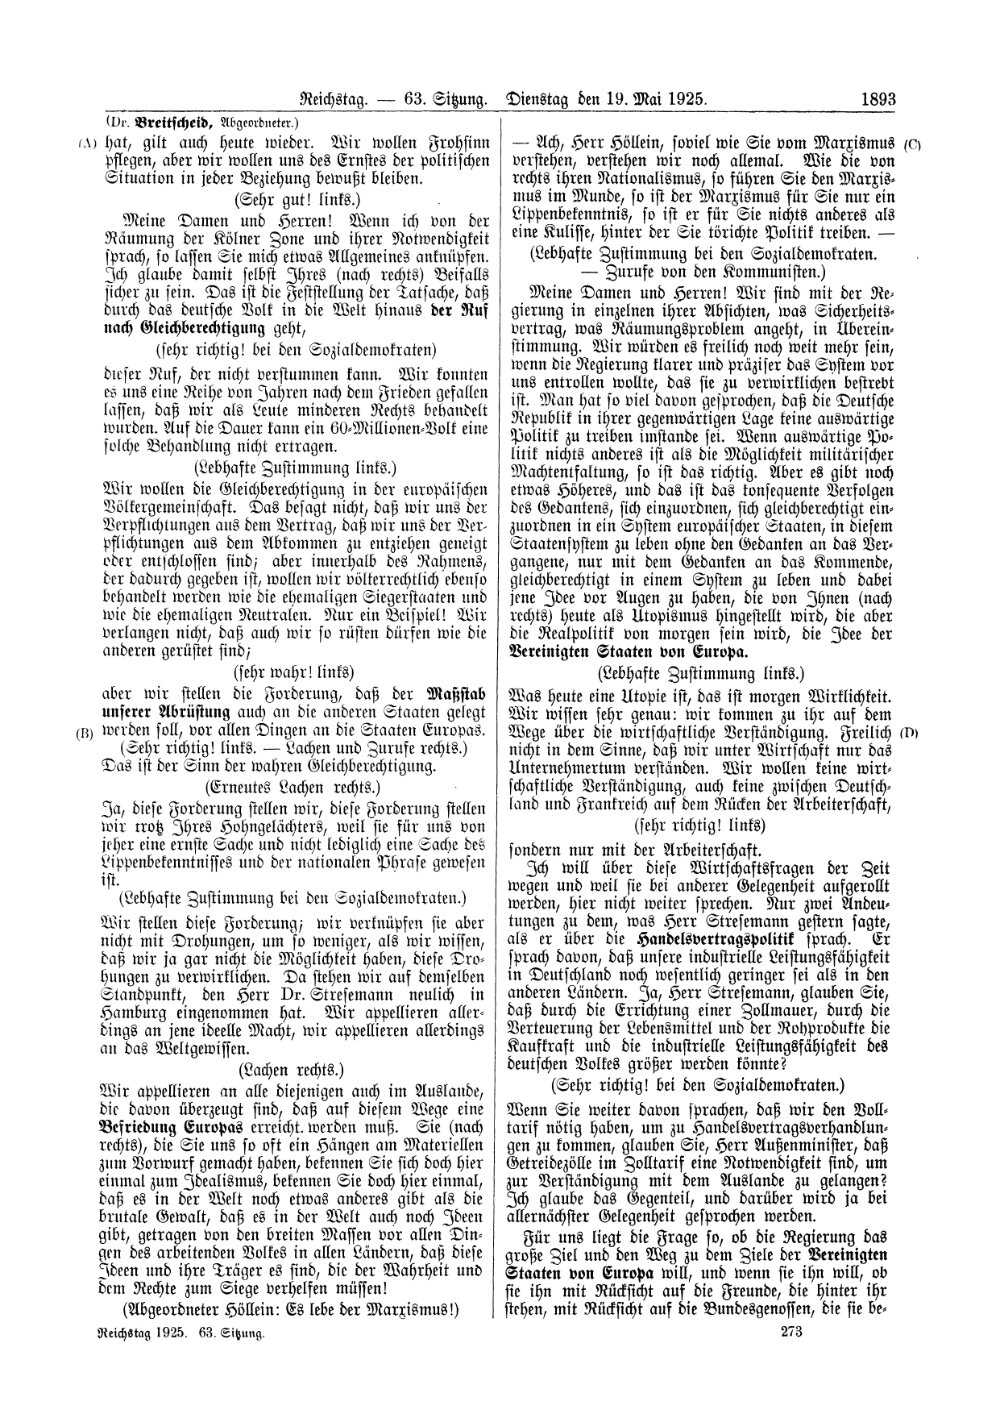 Scan der Seite 1893